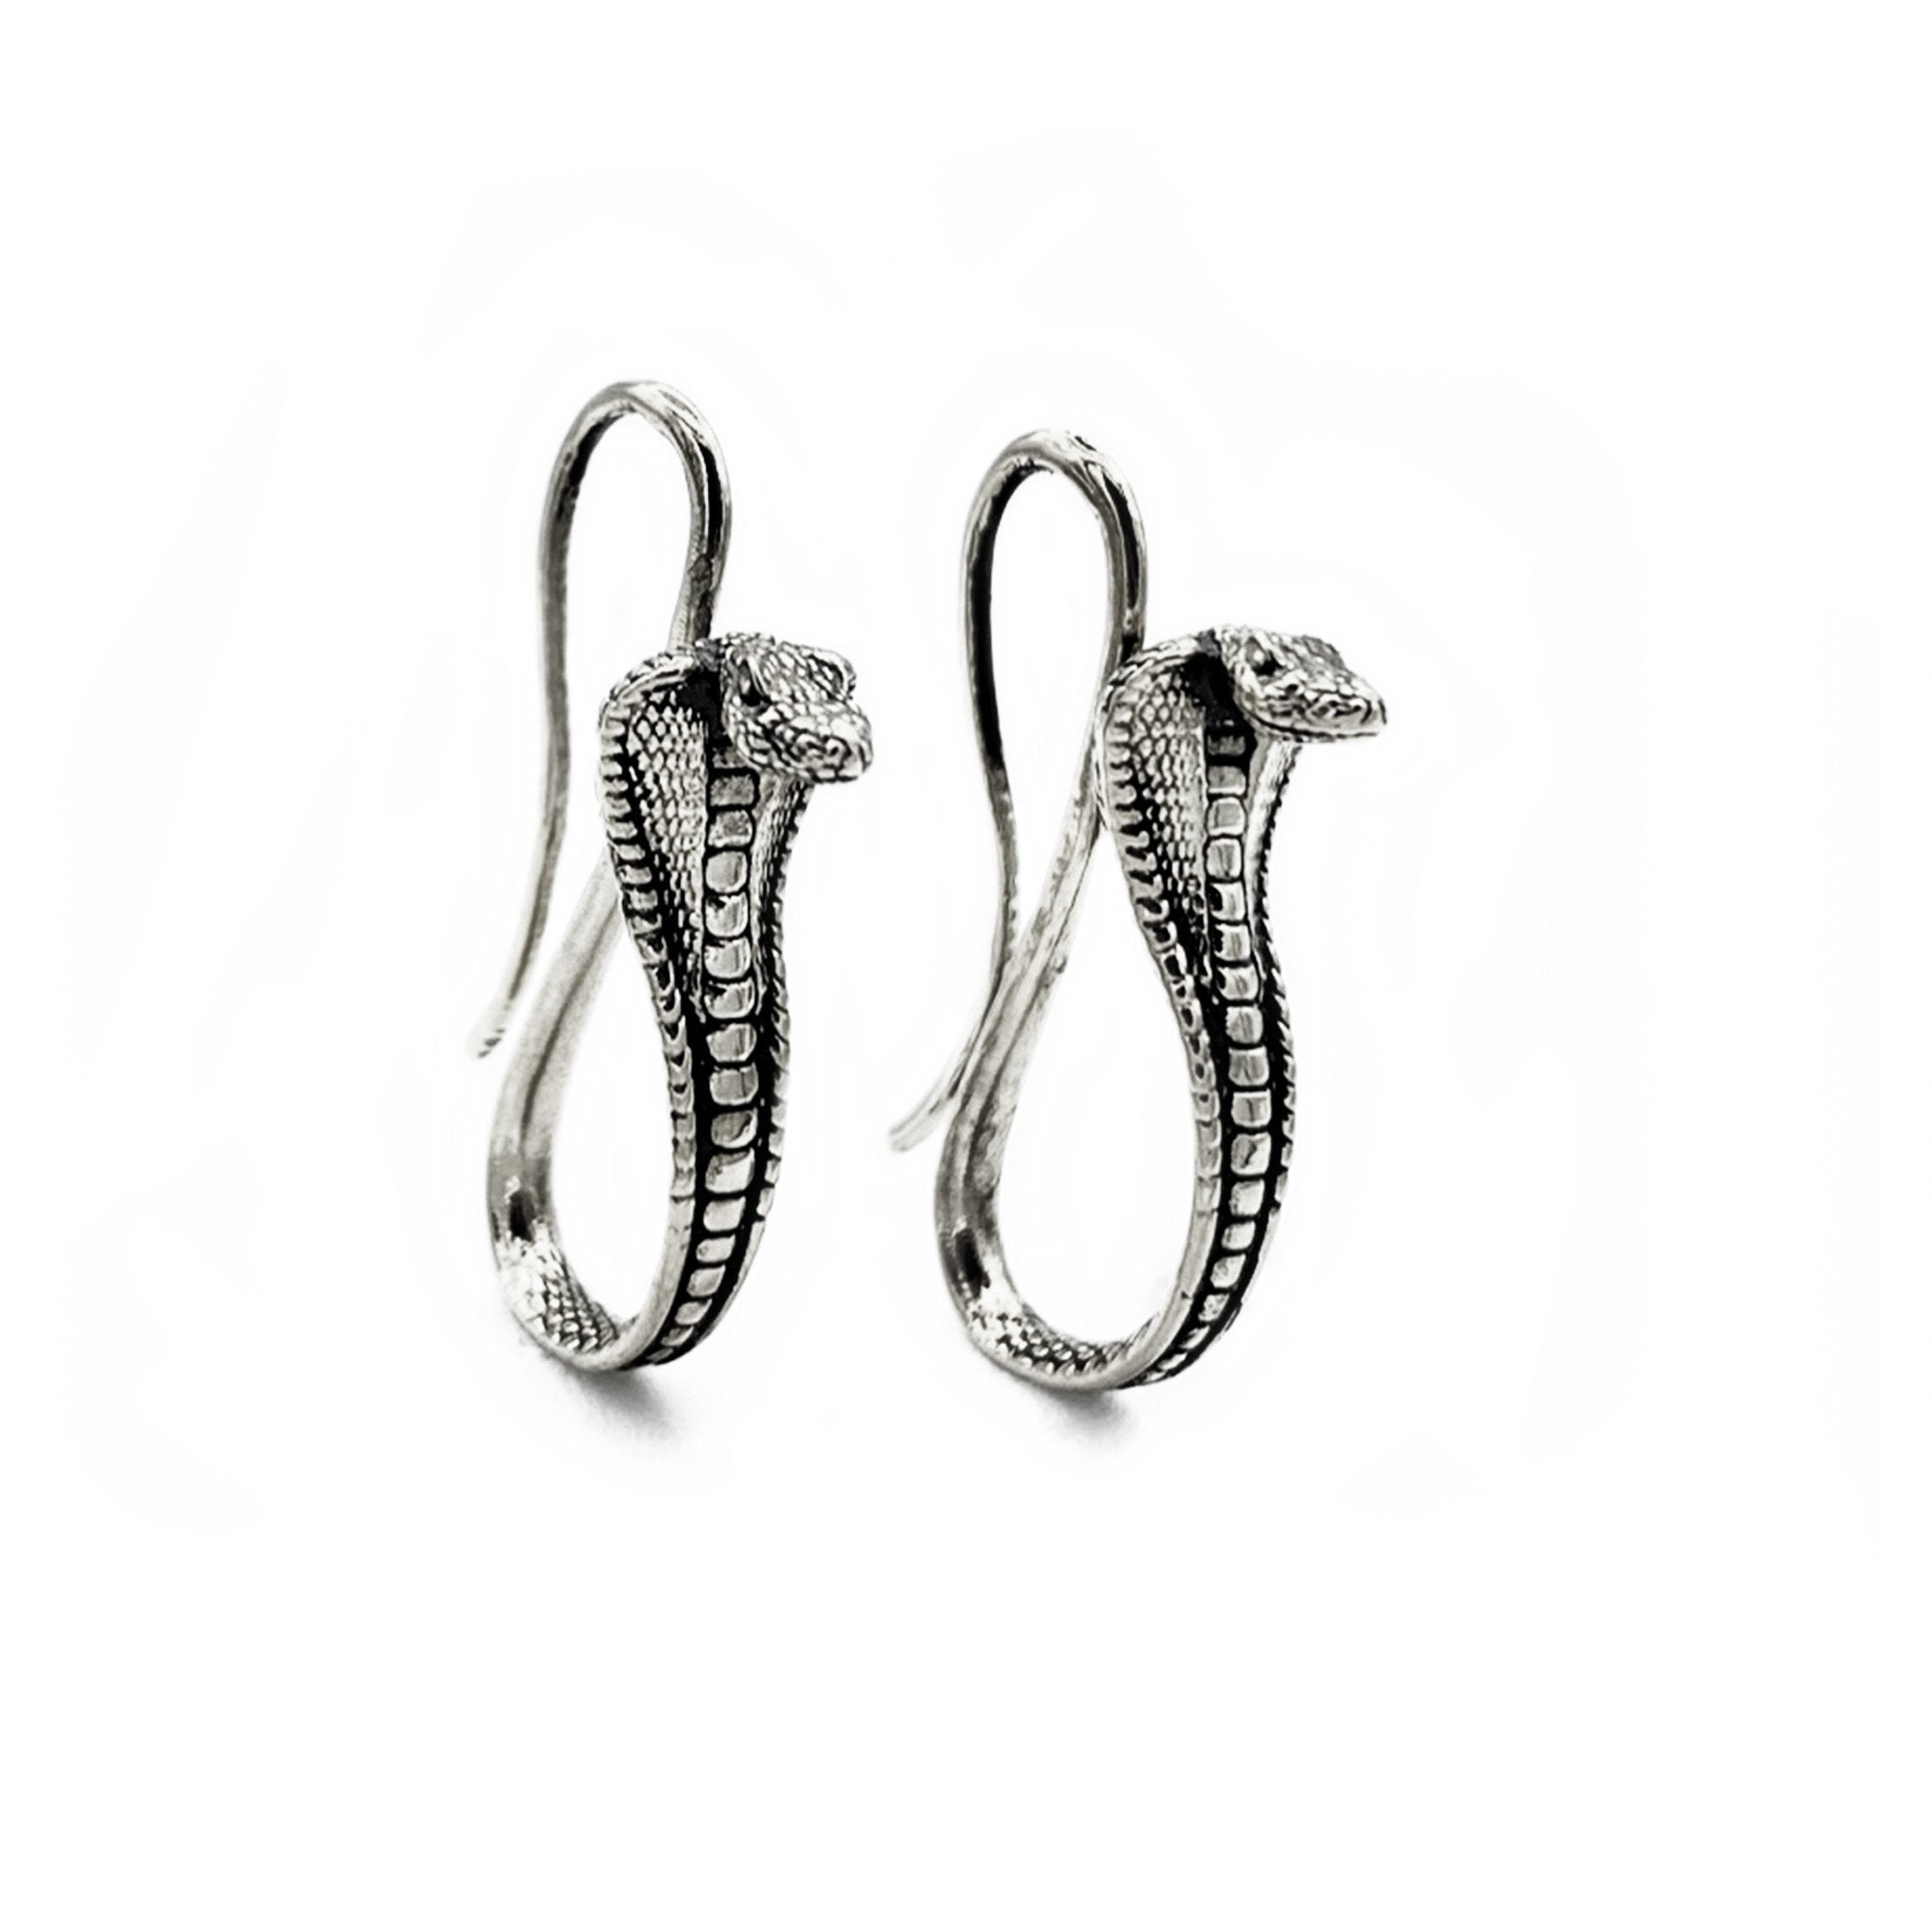 cobra earrings, snake earrings